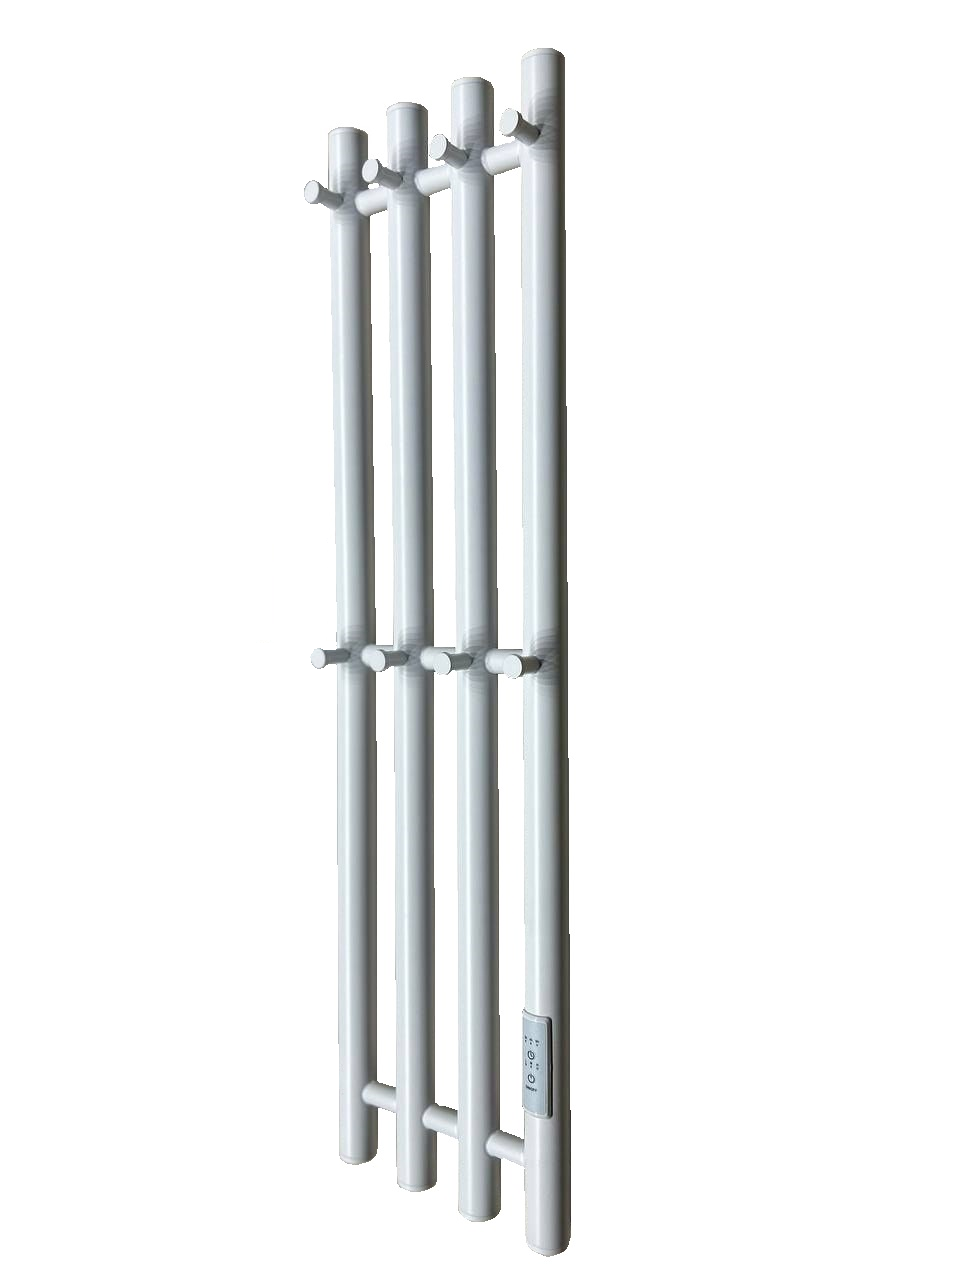 Электрический полотенцесушитель Inaro 4, высота 80 см, ширина 21 см, 8 крючков, цвет белый матовый